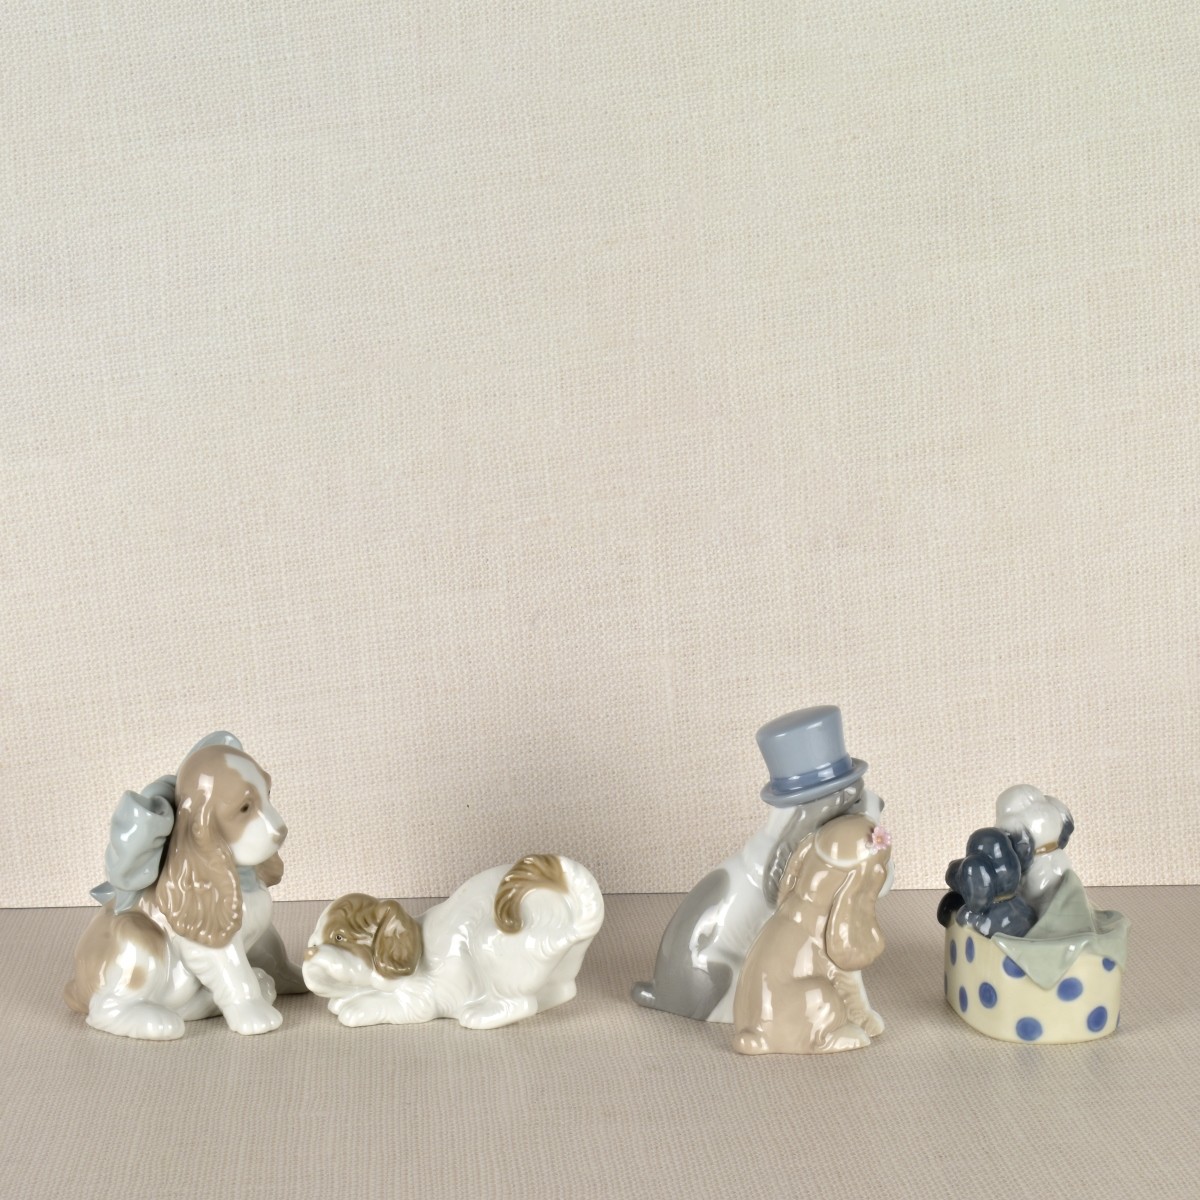 Four Nao Porcelain Dog Figurines